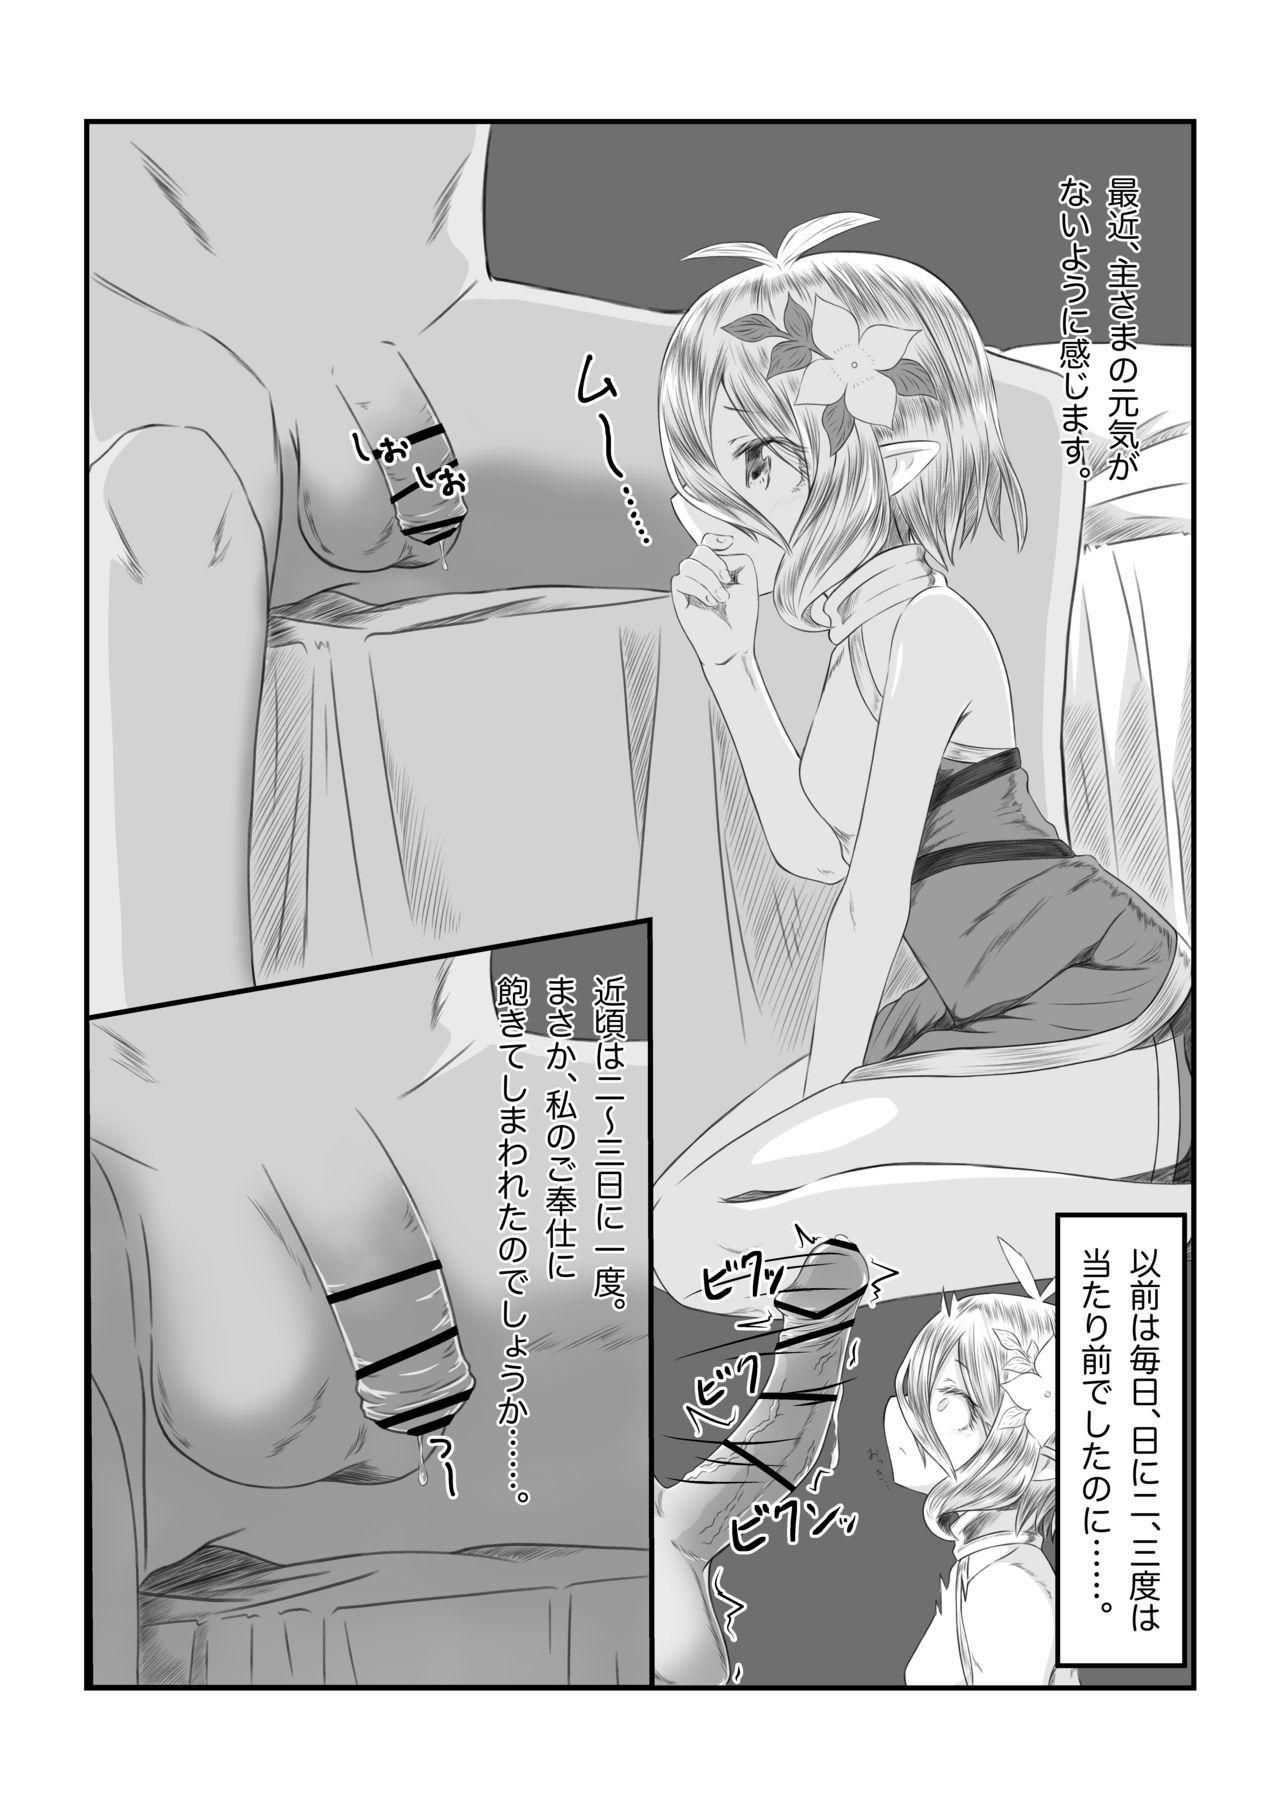 Concha Sore wa amesu-sama ni kinshi sa rete imasu - Princess connect Chicks - Page 3